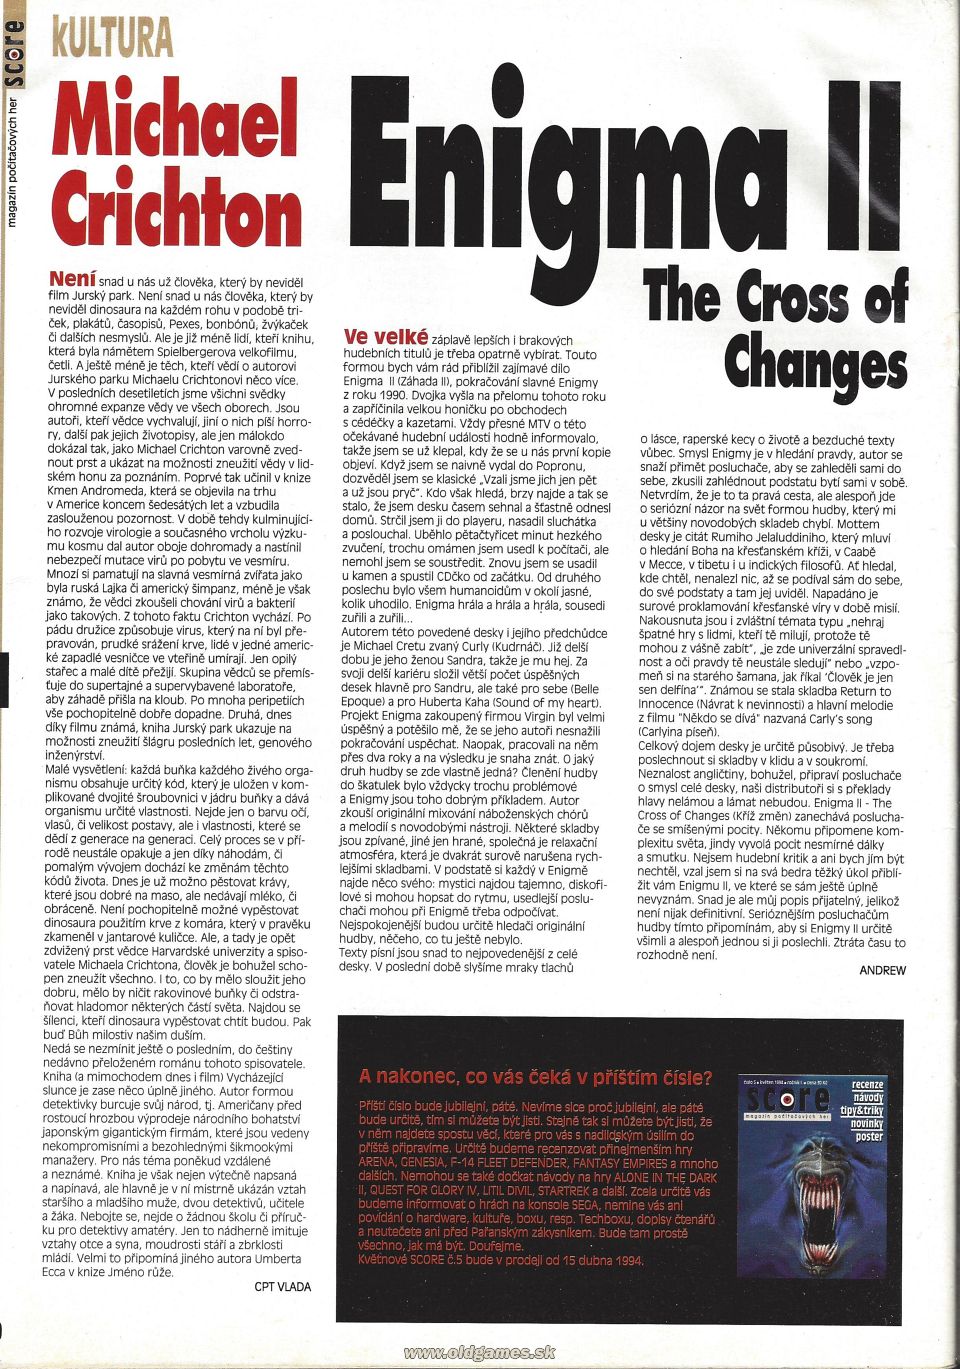 Kultura: Michael Crichton, Enigma II